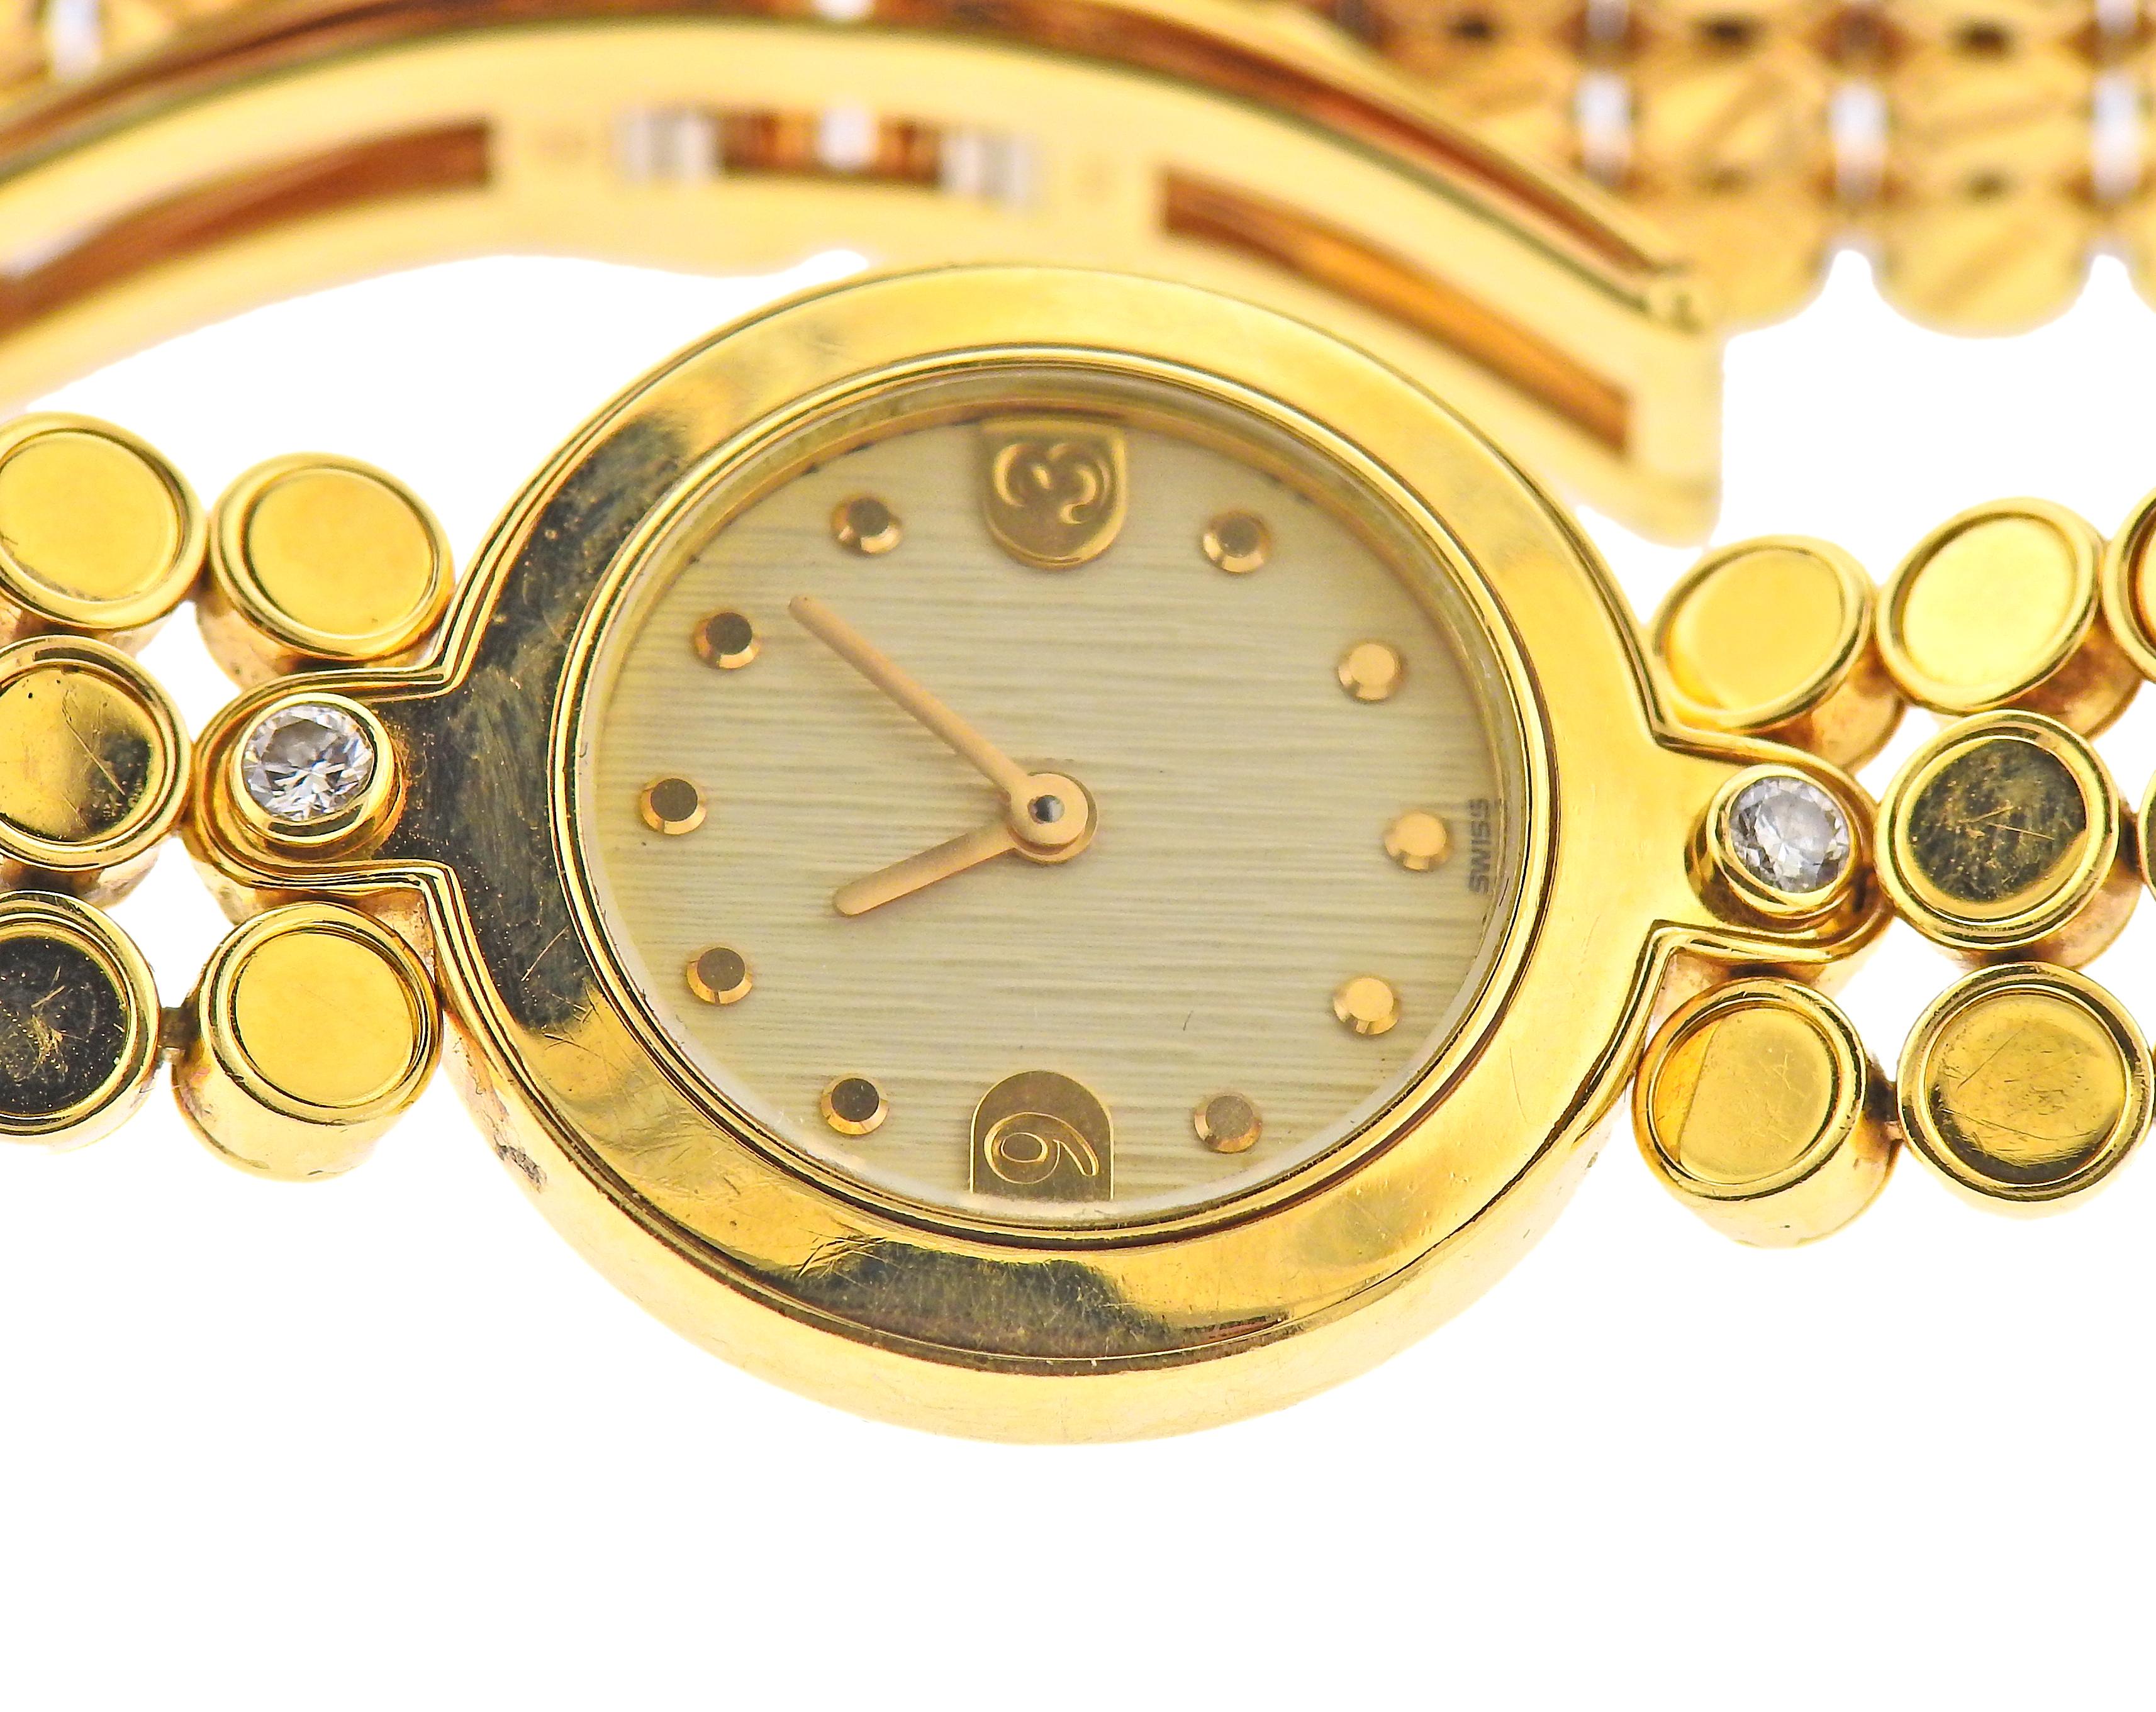 Damenuhr aus 18 Karat Gold von Harry Winston, verziert mit 2 Diamanten. Gehäuse - 22 mm im Durchmesser. 18k Goldarmband mit versteckter Faltschließe passt bis zu 7